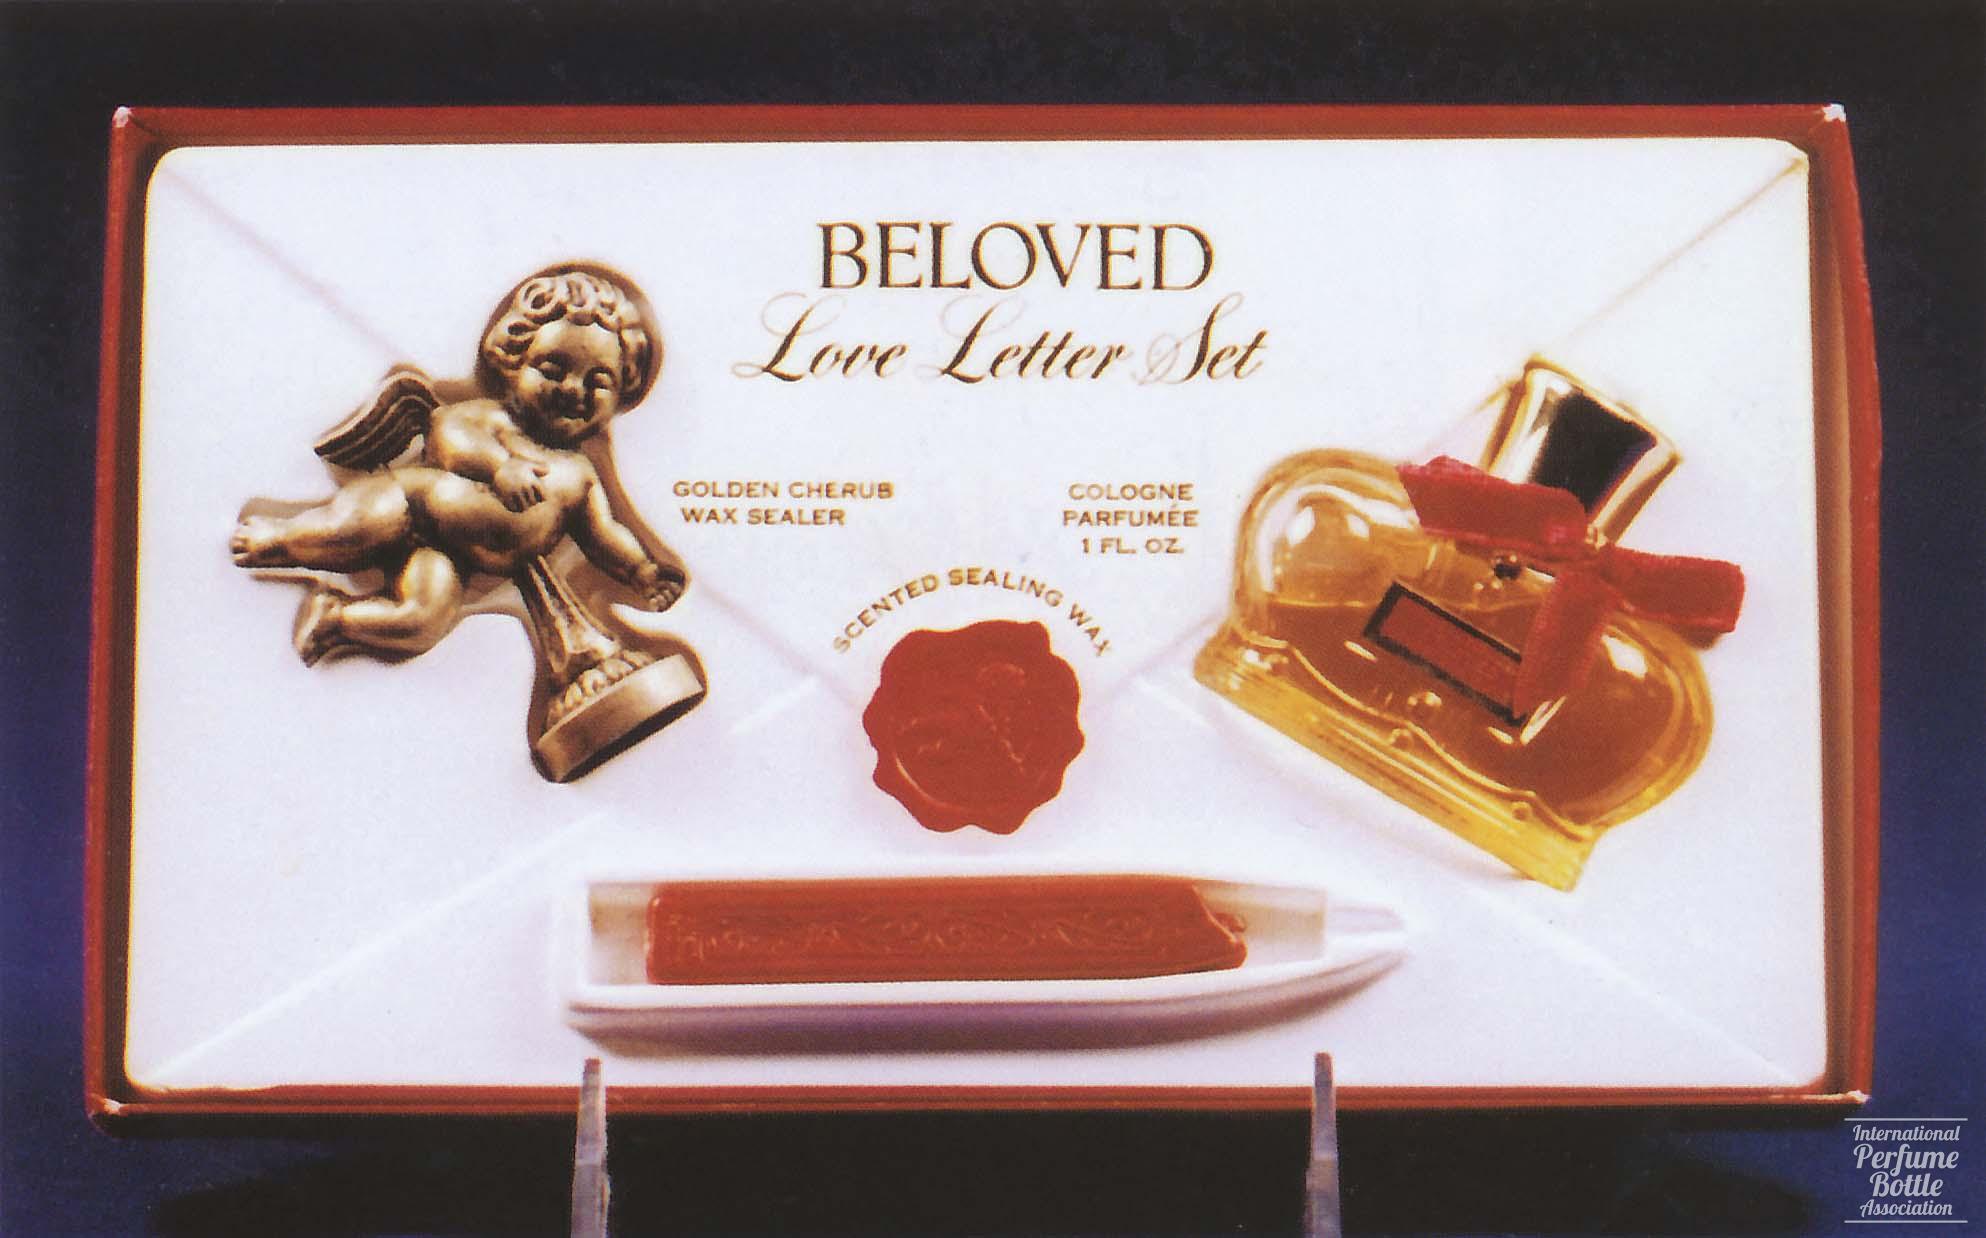 "Beloved" Love Letter Set by Prince Matchabelli